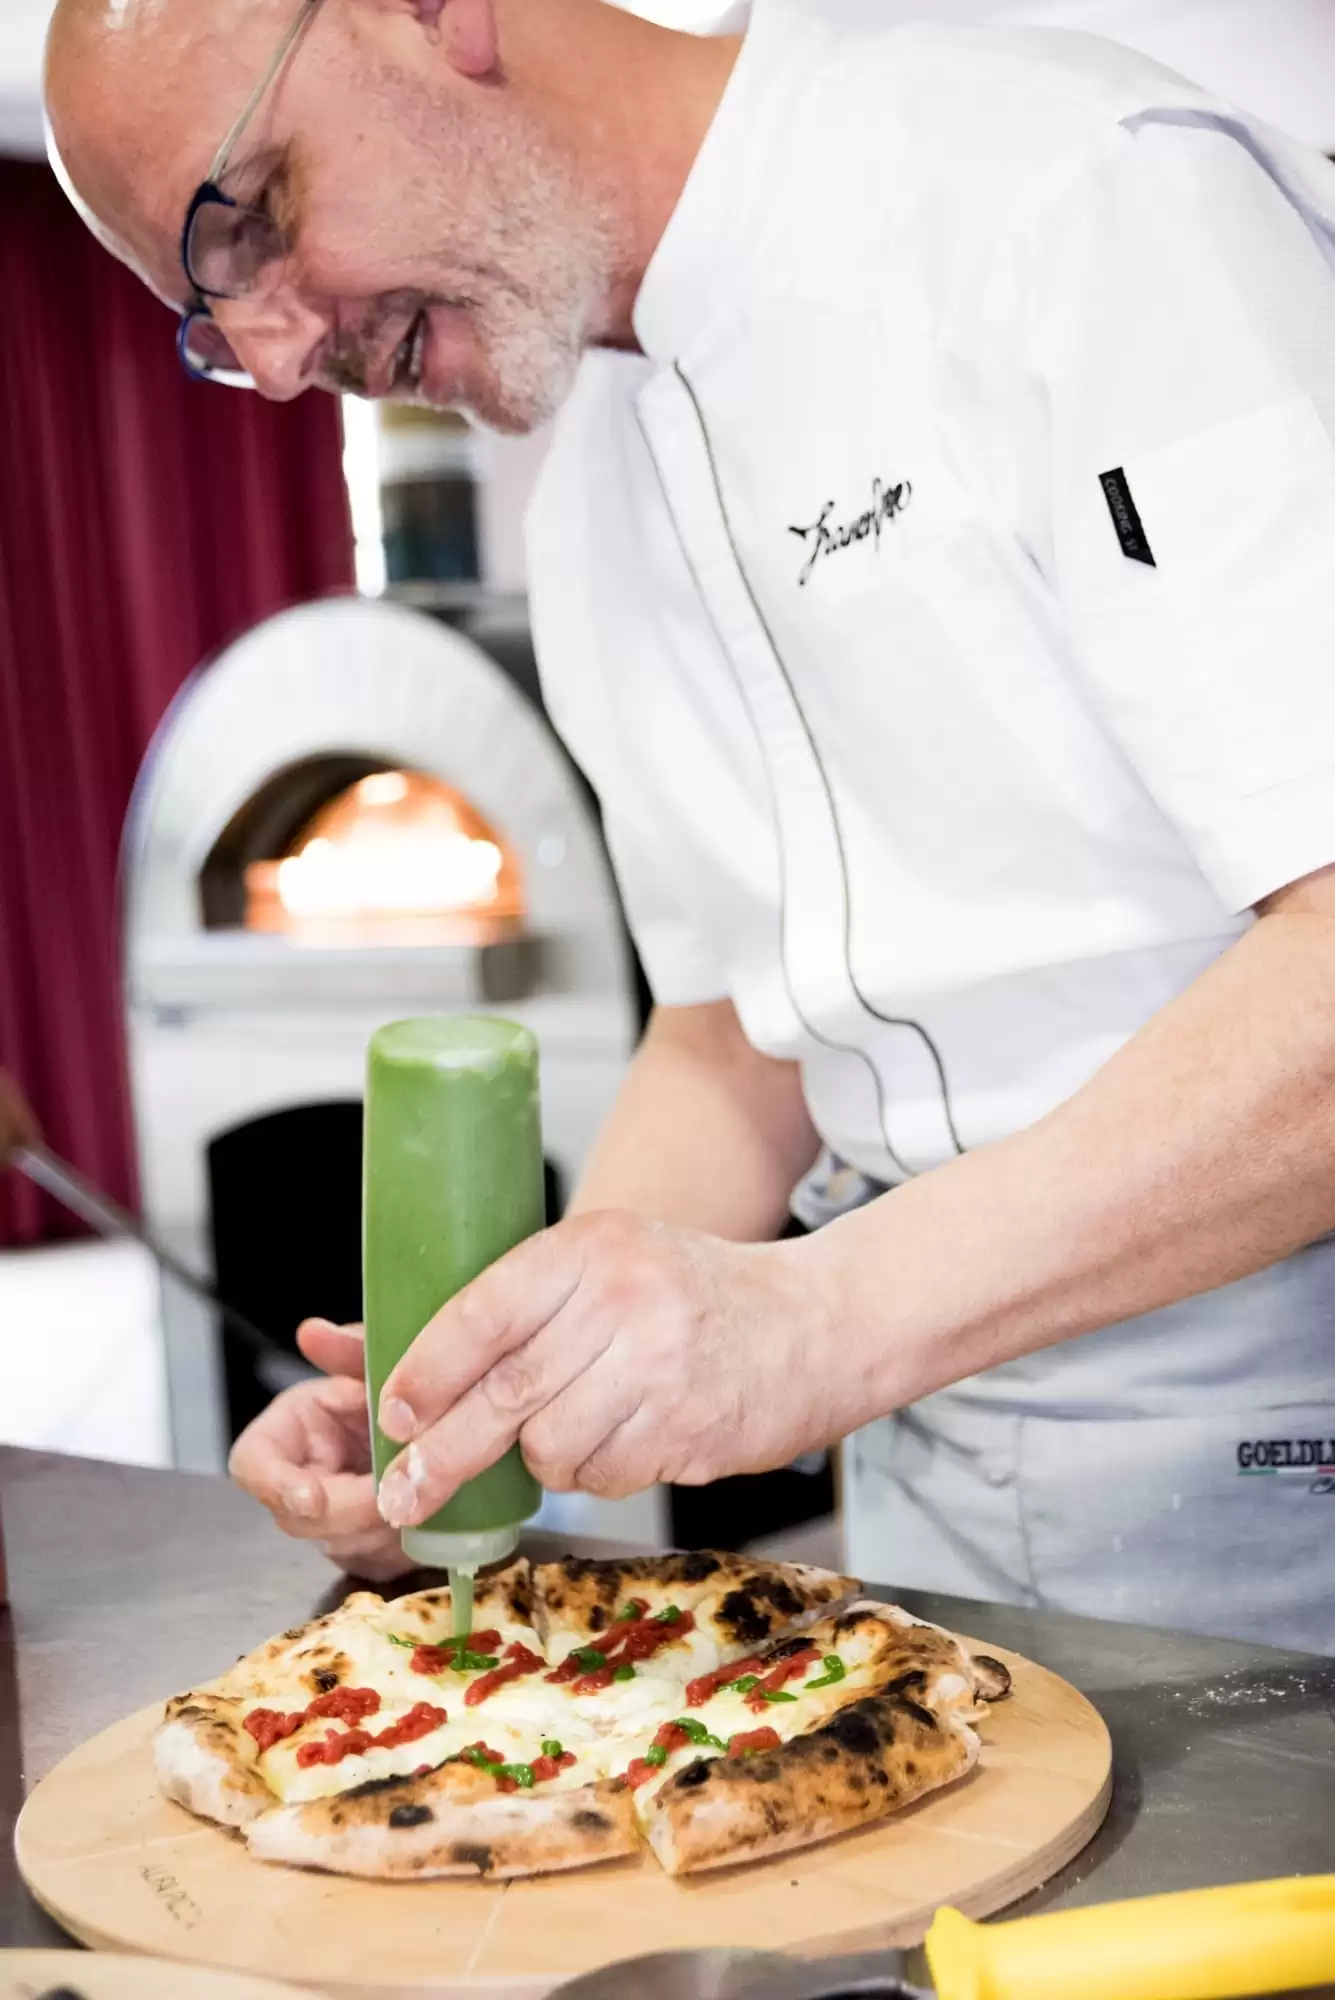 Cómo elegir el mejor horno de pizza profesional | Alfa Forni